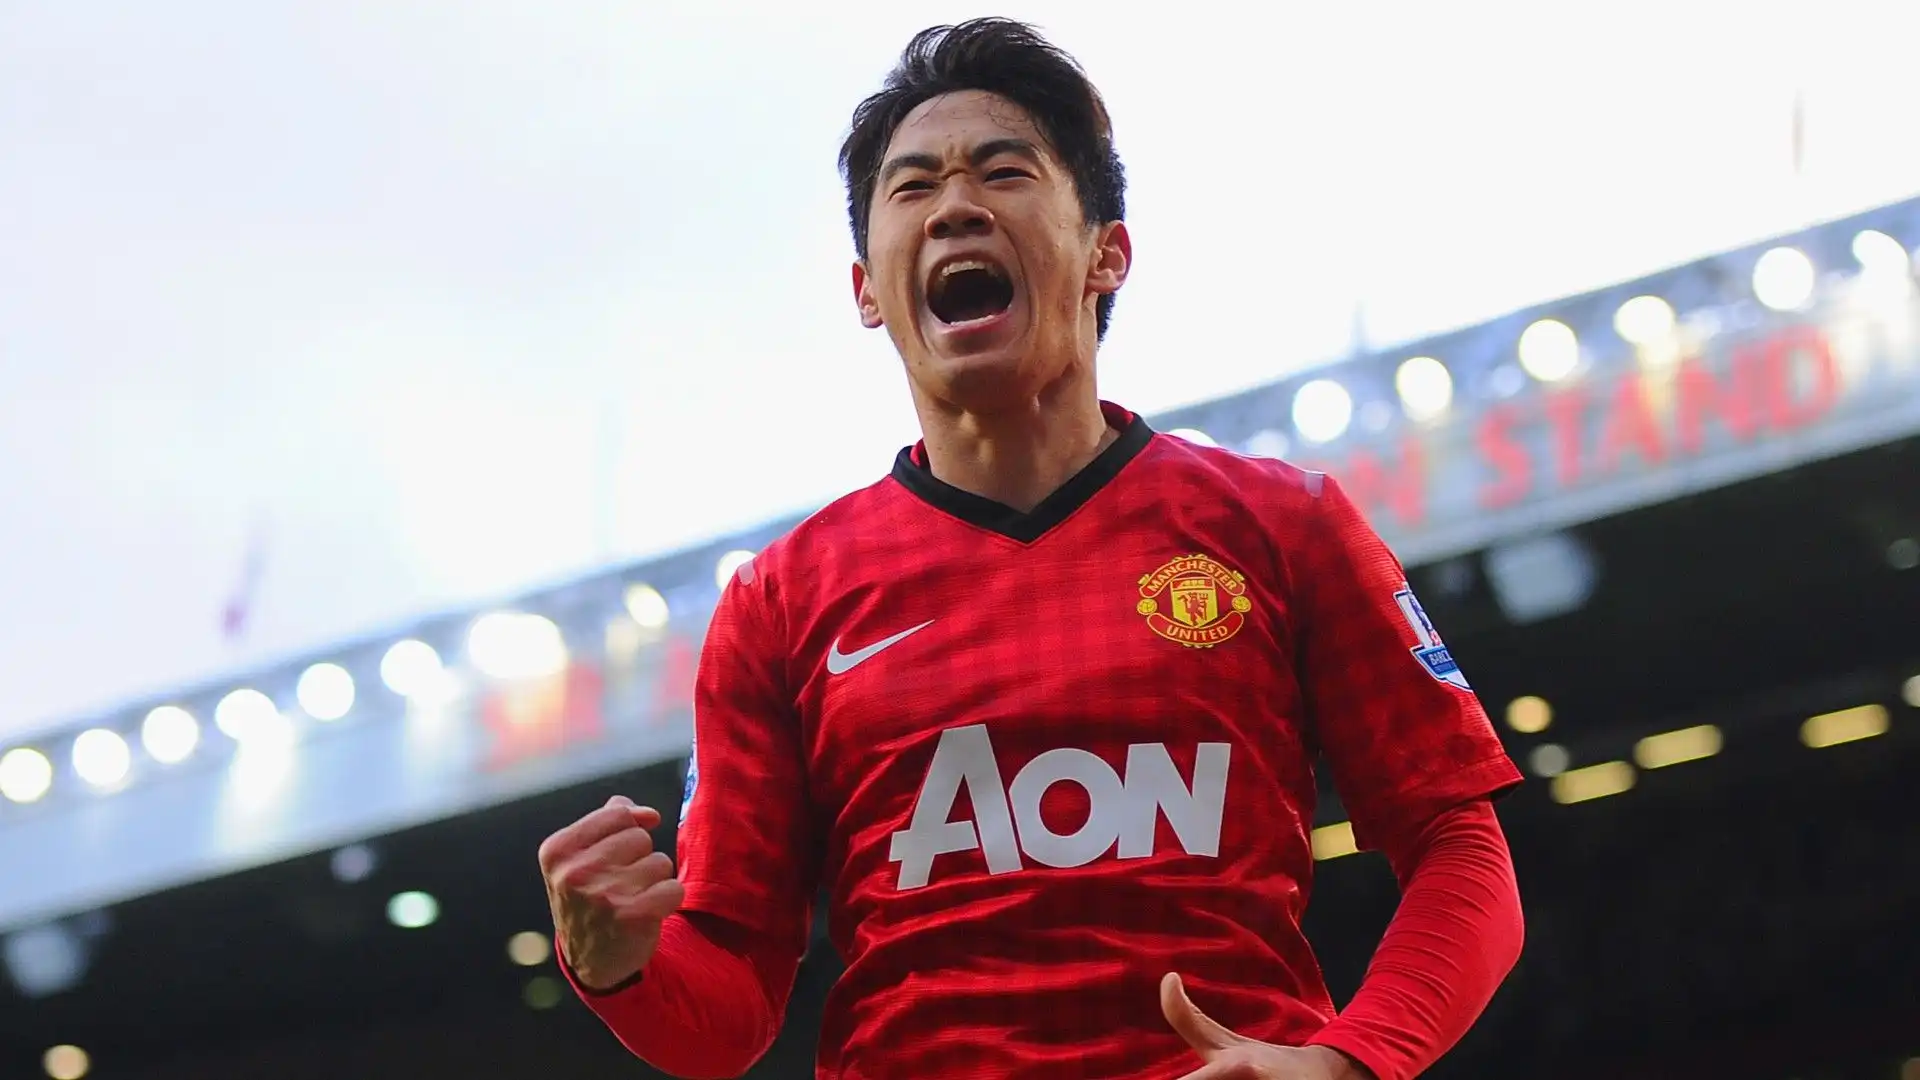 6- Nella stagione 2012-2013 il Manchester United ha acquistato Shinji Kagawa dal Borussia Dortmund per 16 milioni di euro